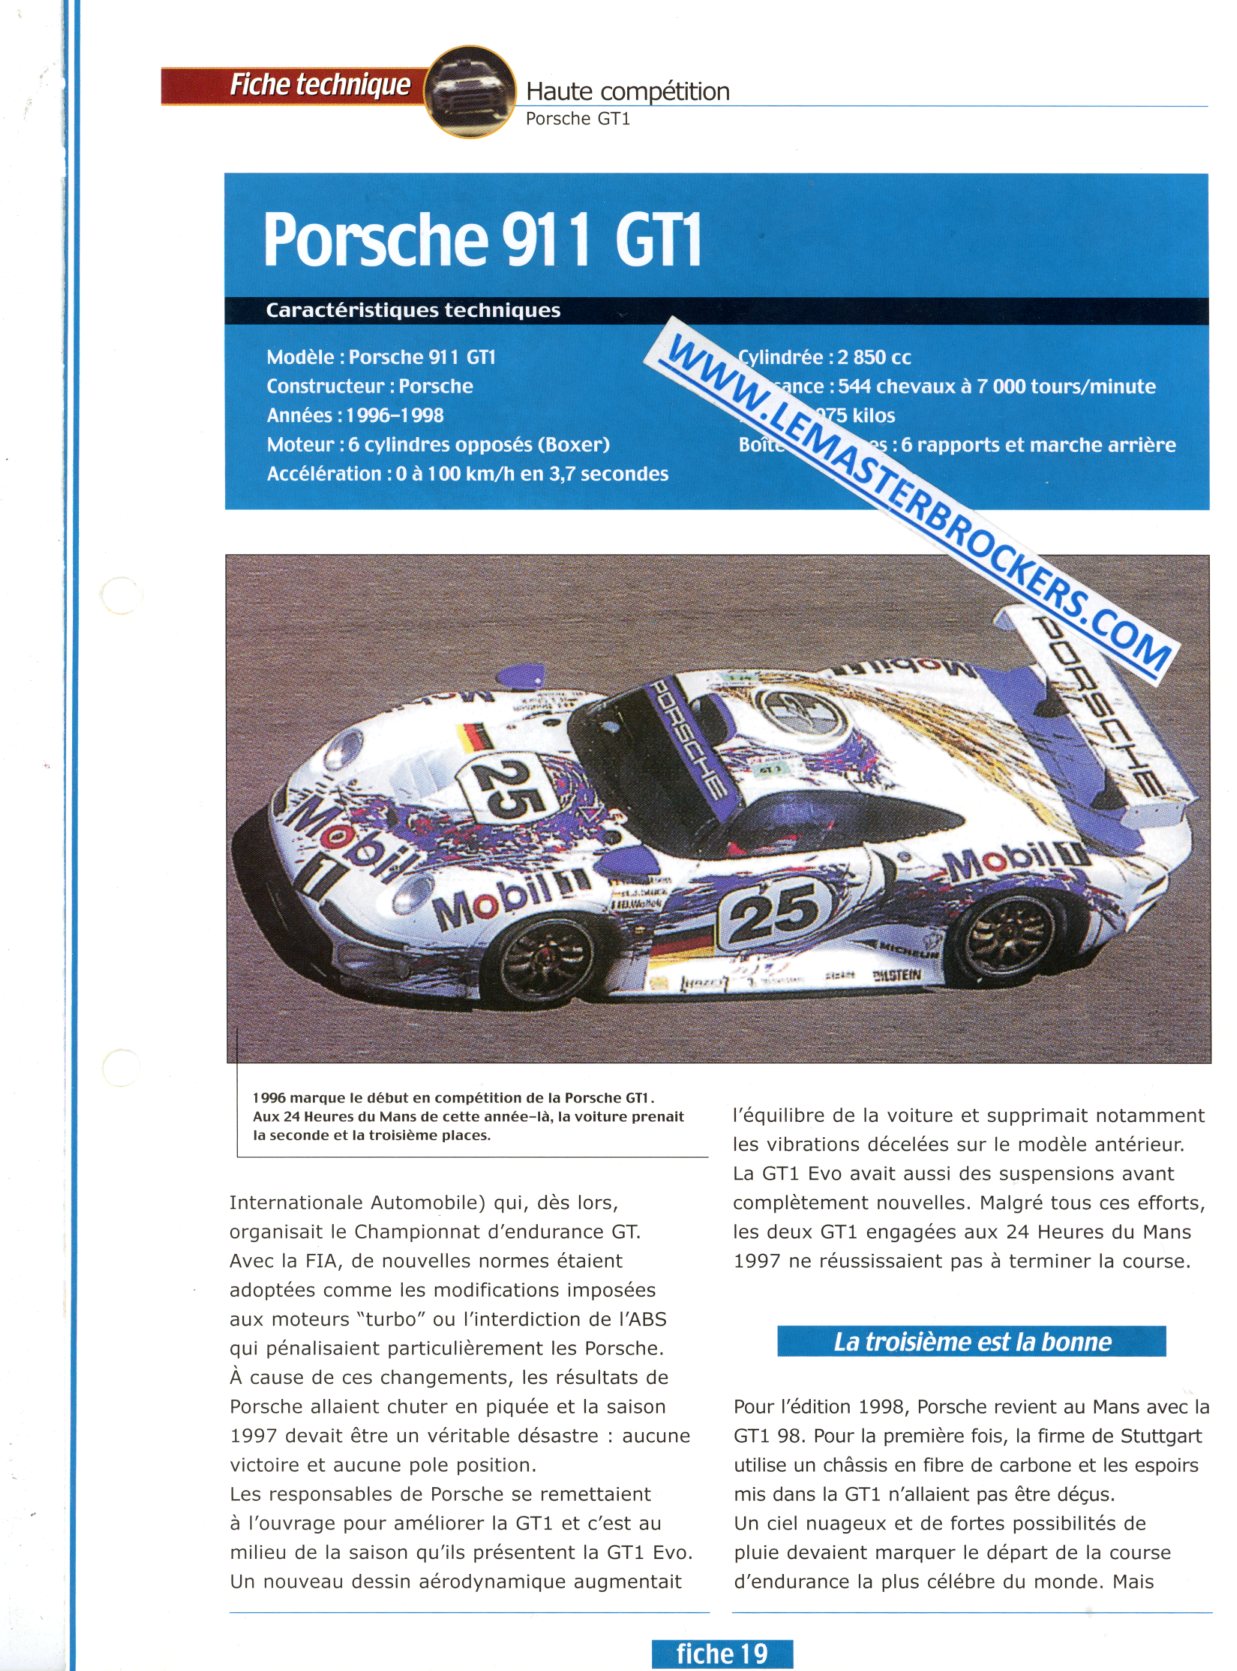 FICHE TECHNIQUE PORSCHE 911 GT1